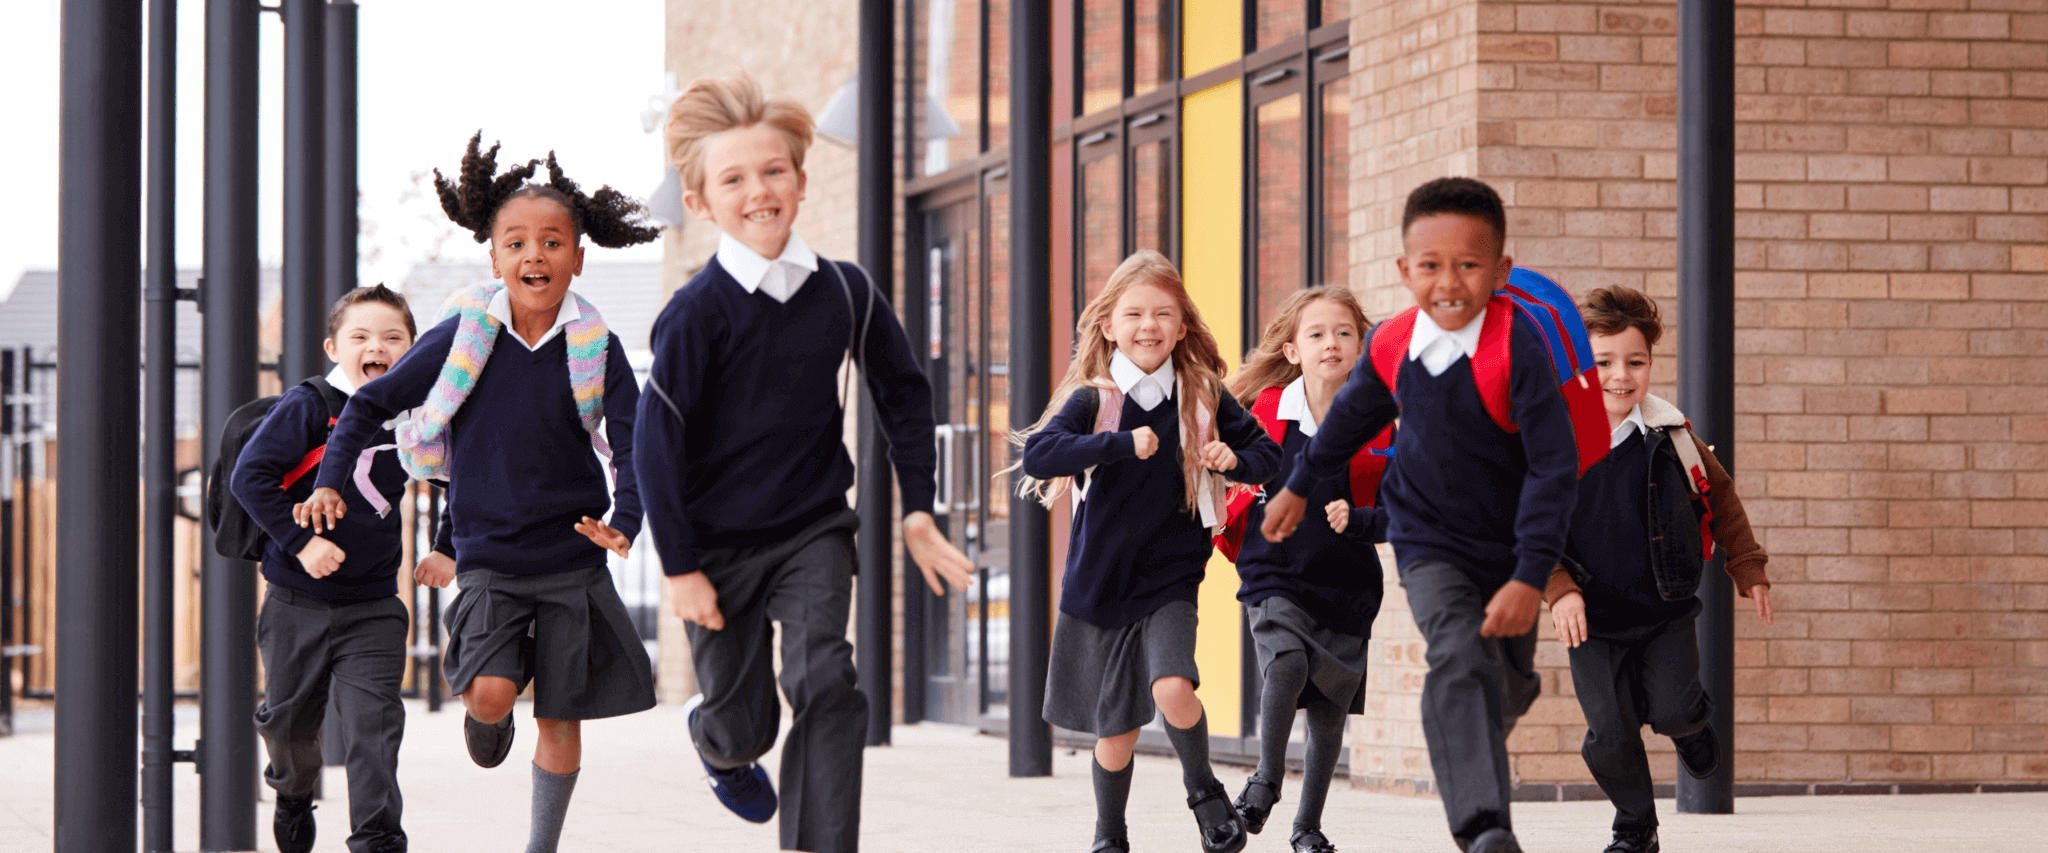 school children running geotagged